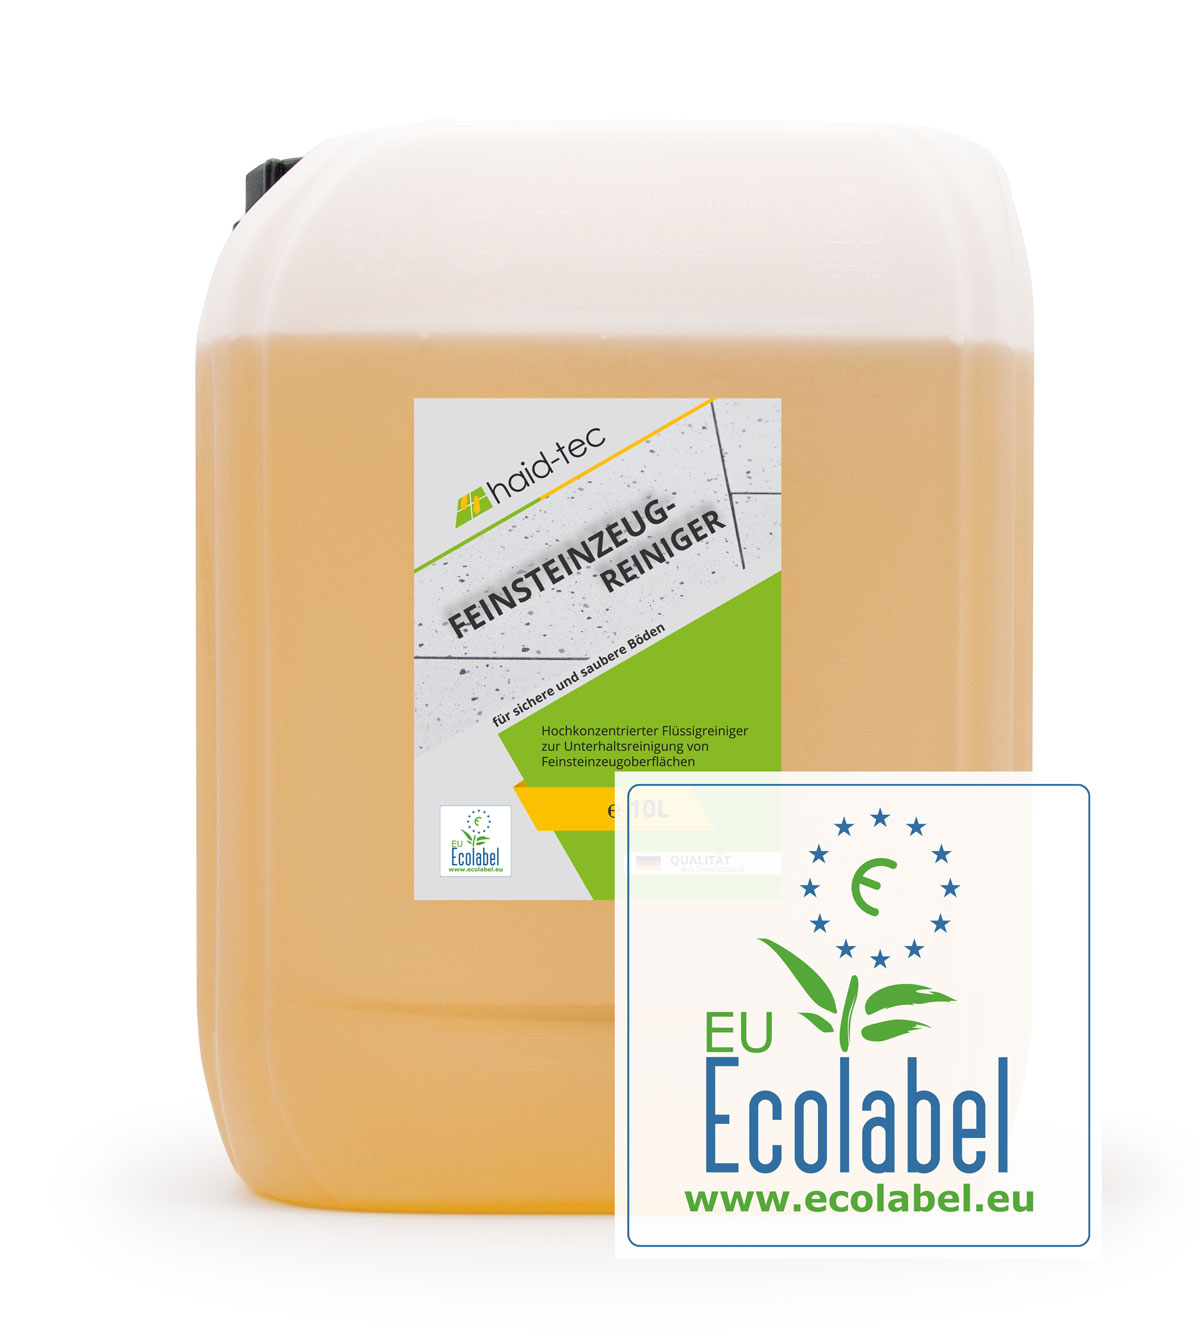 haid-tec Feinsteinzeug Unterhaltsreiniger 10L, Naturstein- und Fliesenreiniger mit Antikalk Formel - ausgezeichnet mit EU ecolabel, biologisch abbaubar